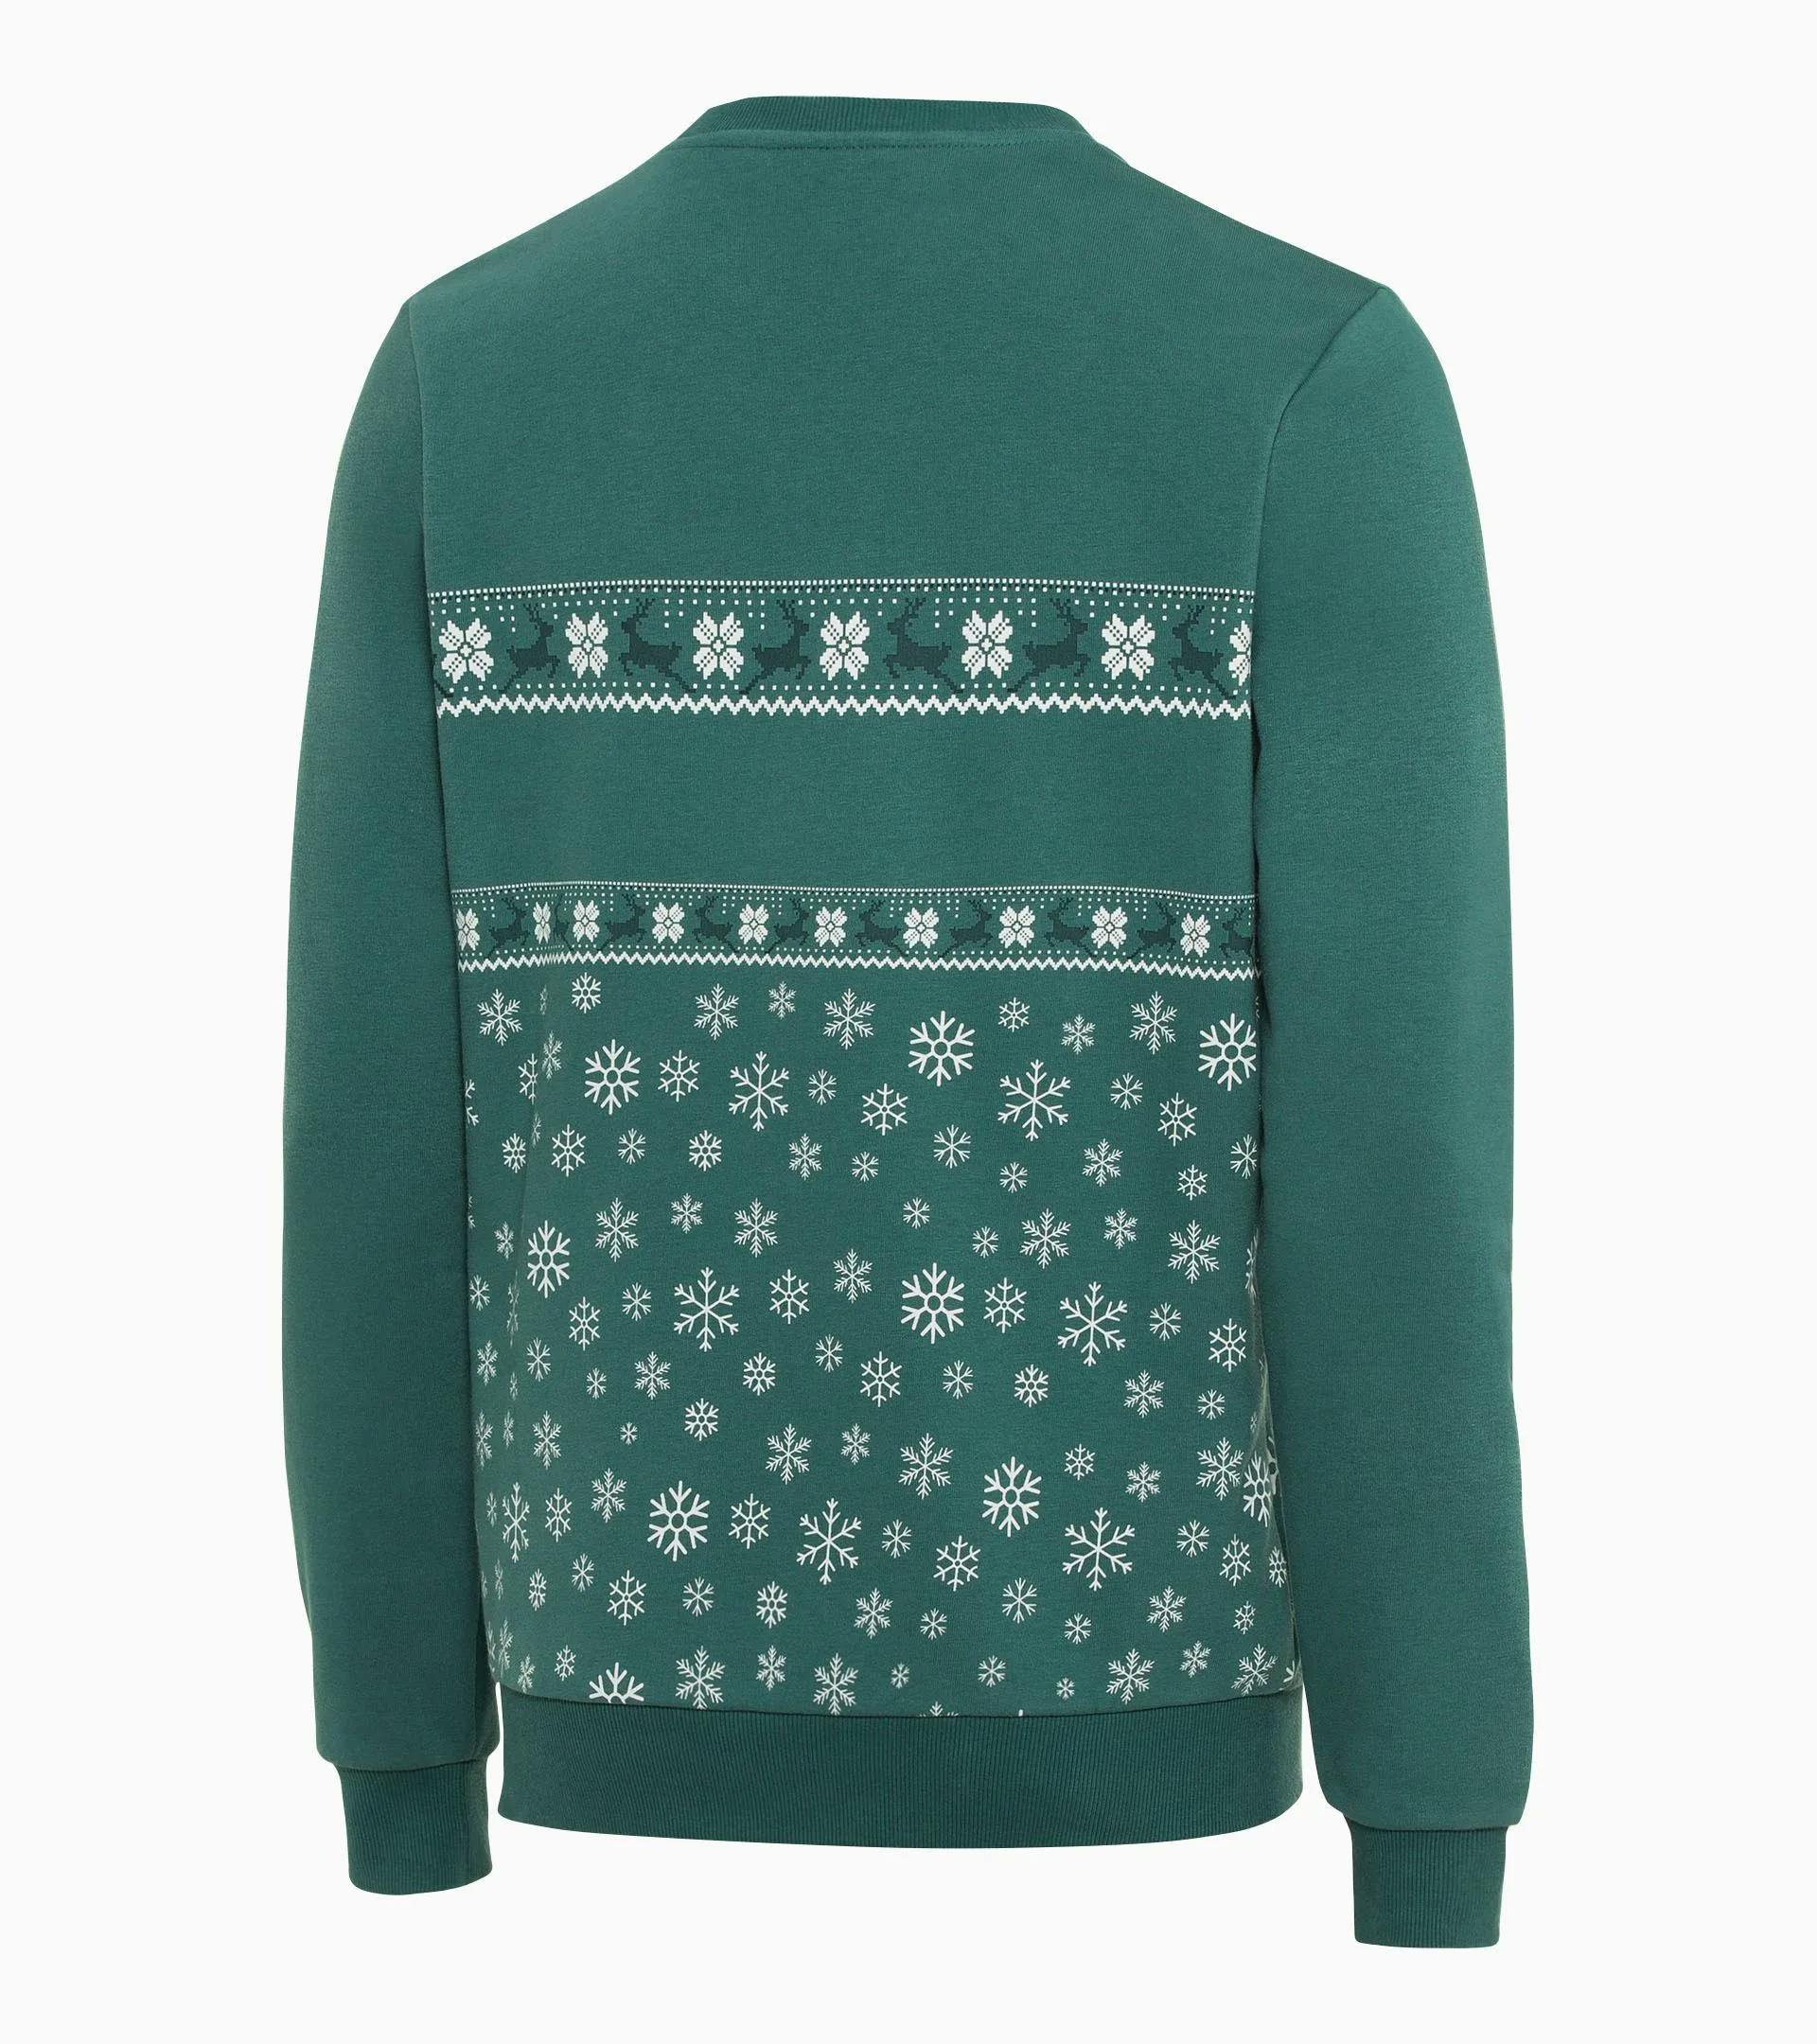 Sweatshirt Unisex – Christmas 2